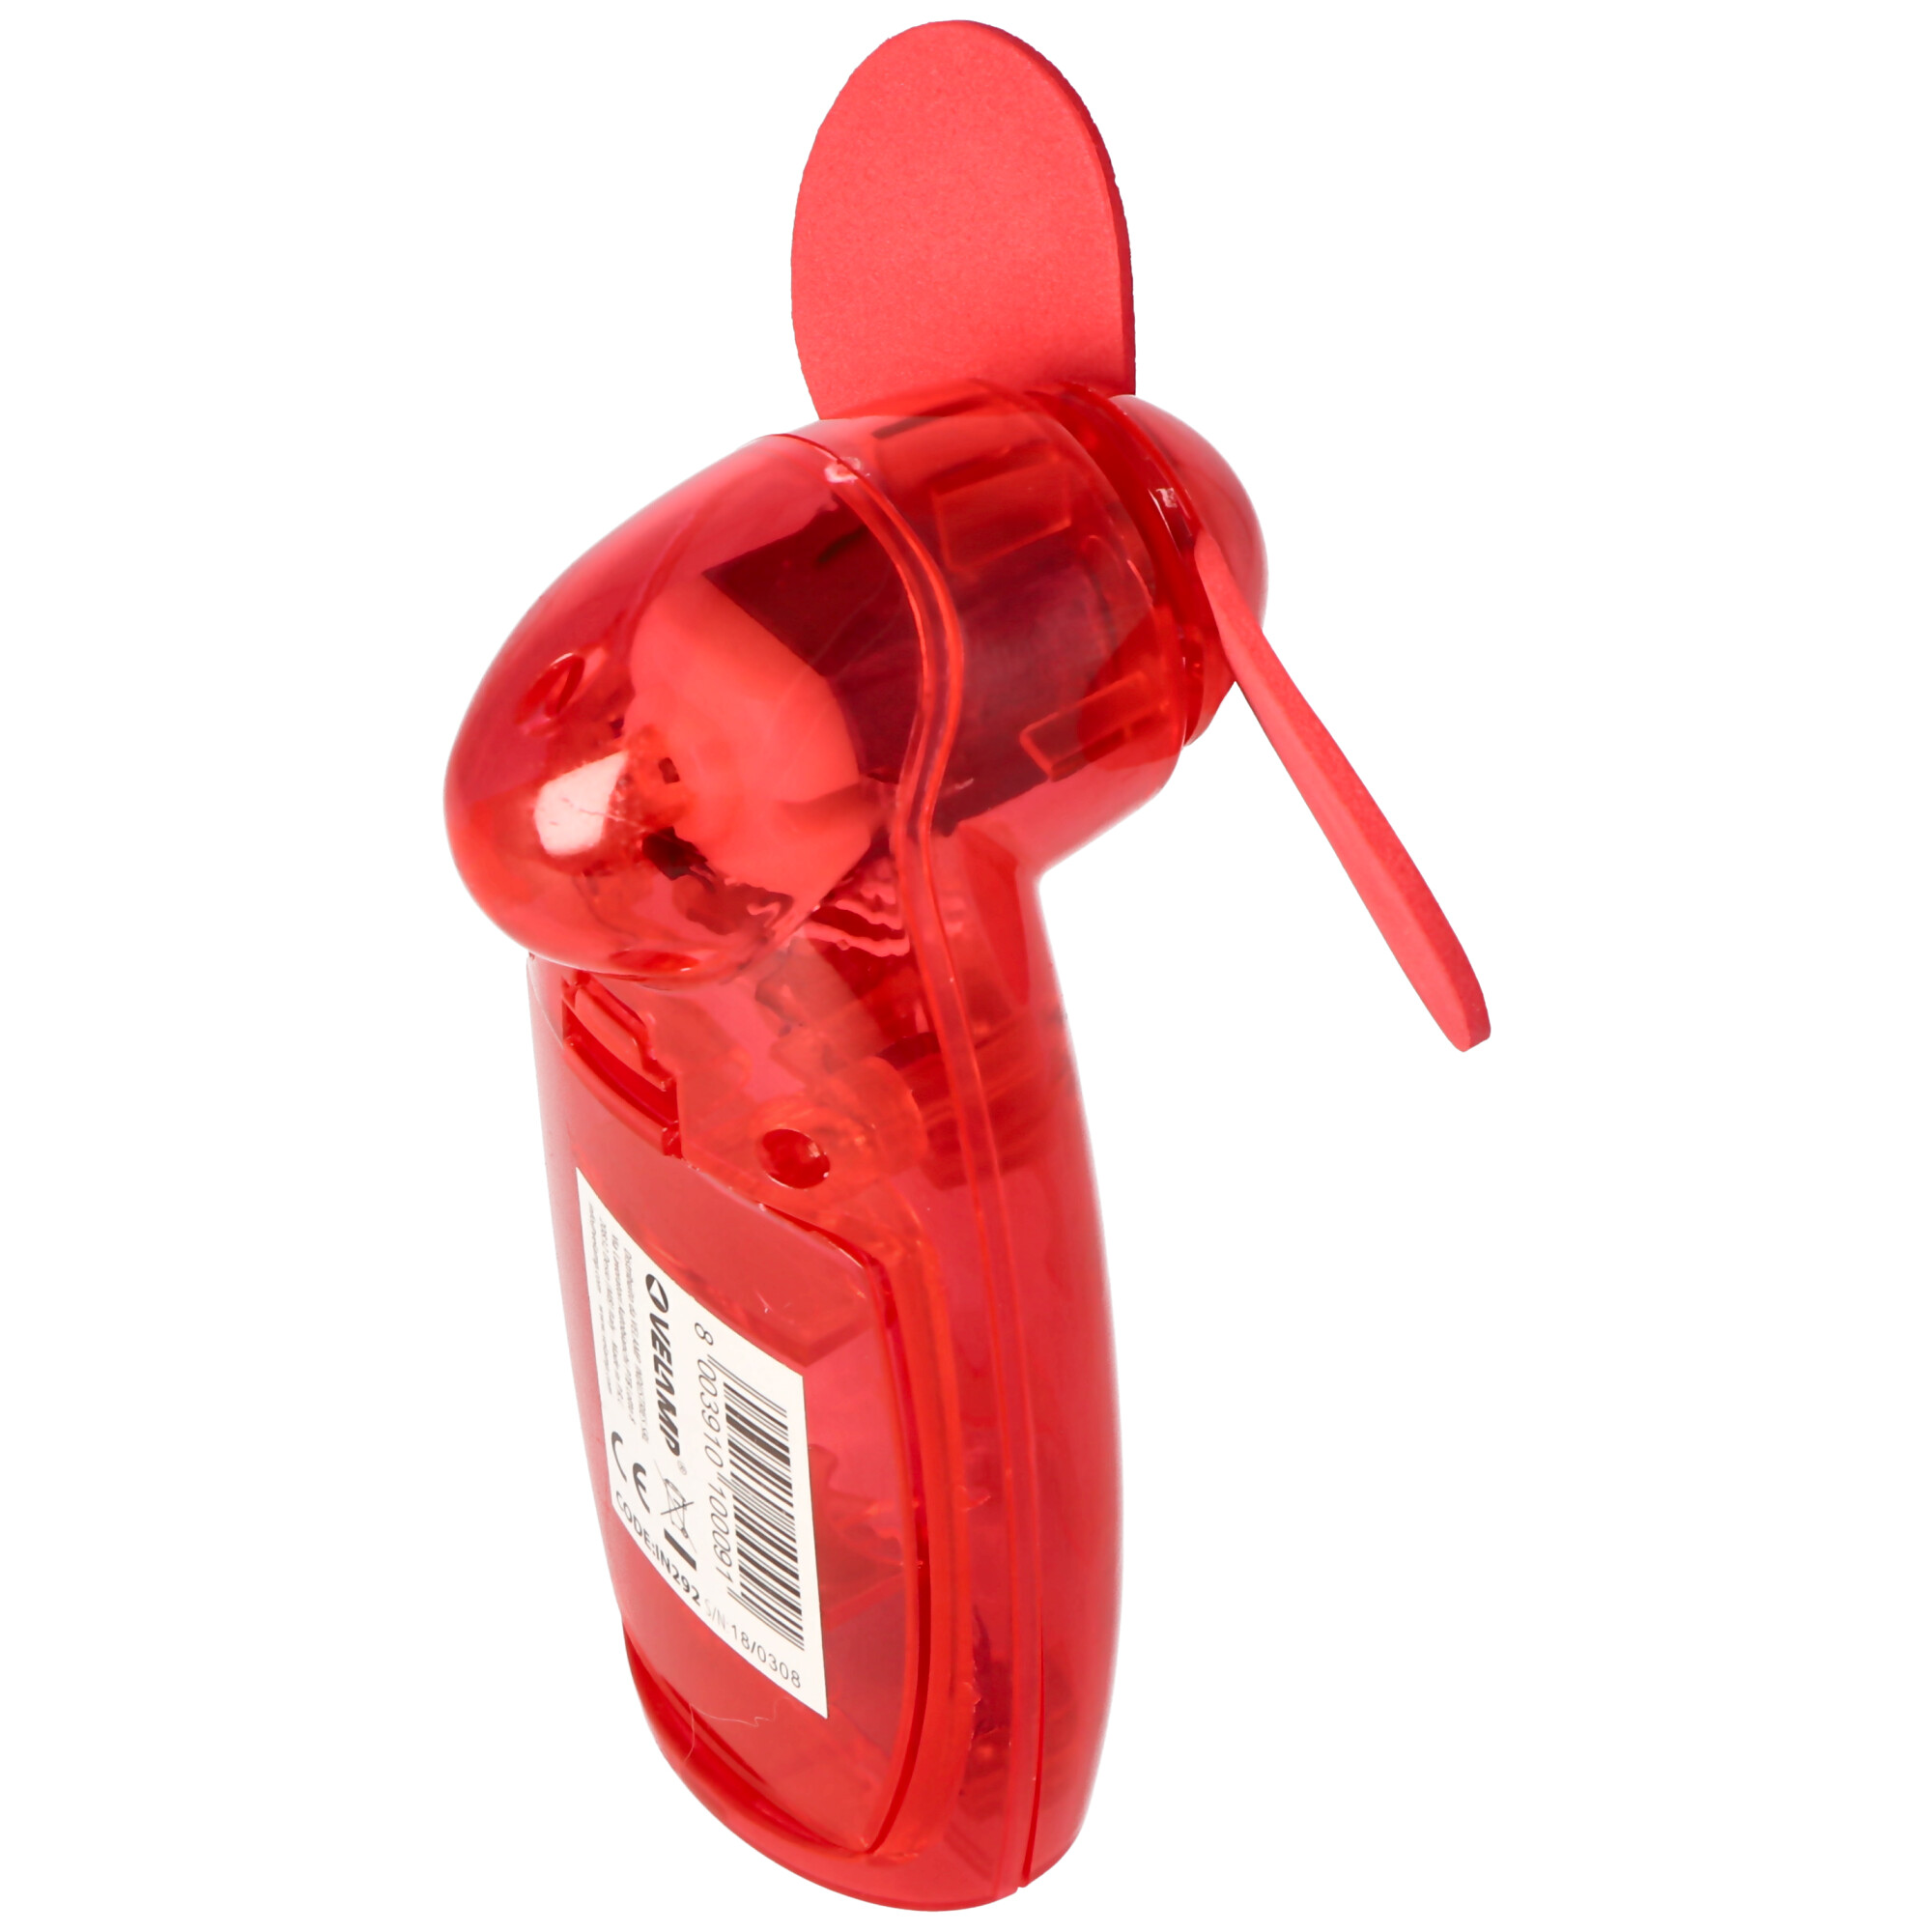 Handventilator translucent, farblich sortiert, klein und kompakt, ideal für unterwegs, Geräuscharm